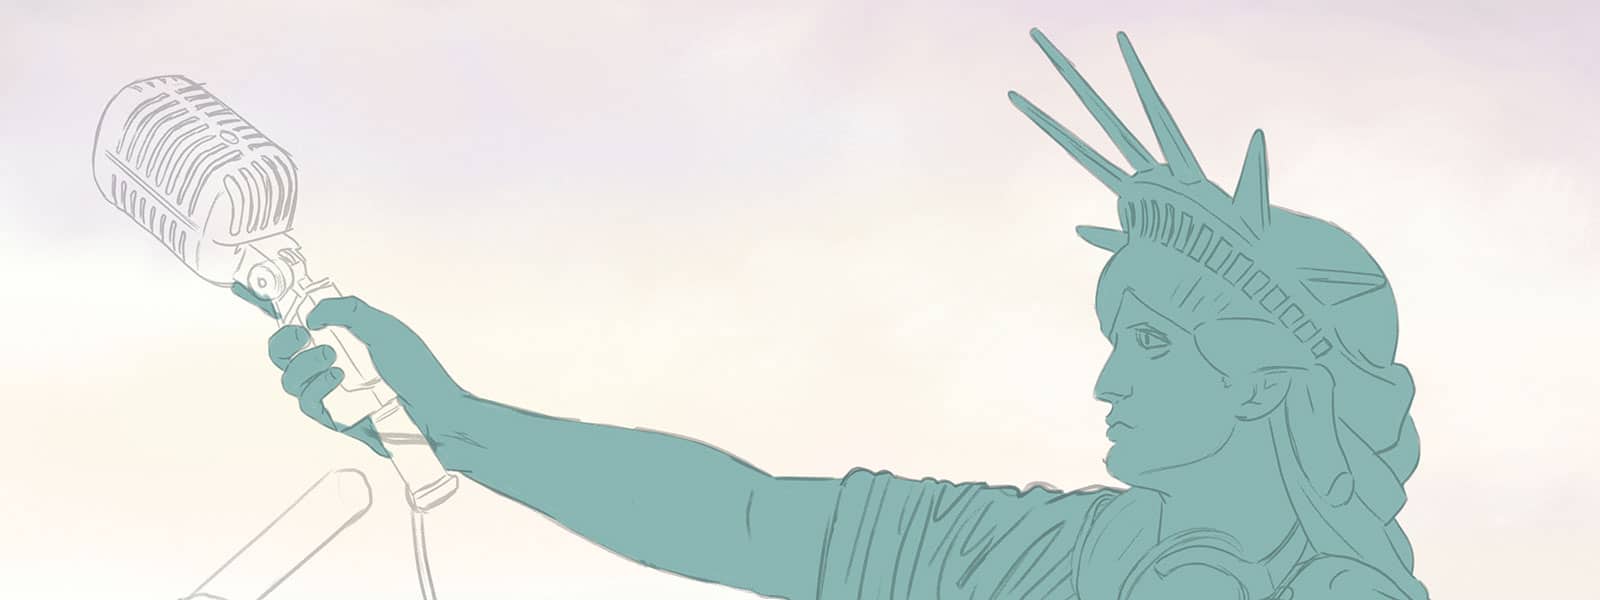 Liberty Detail